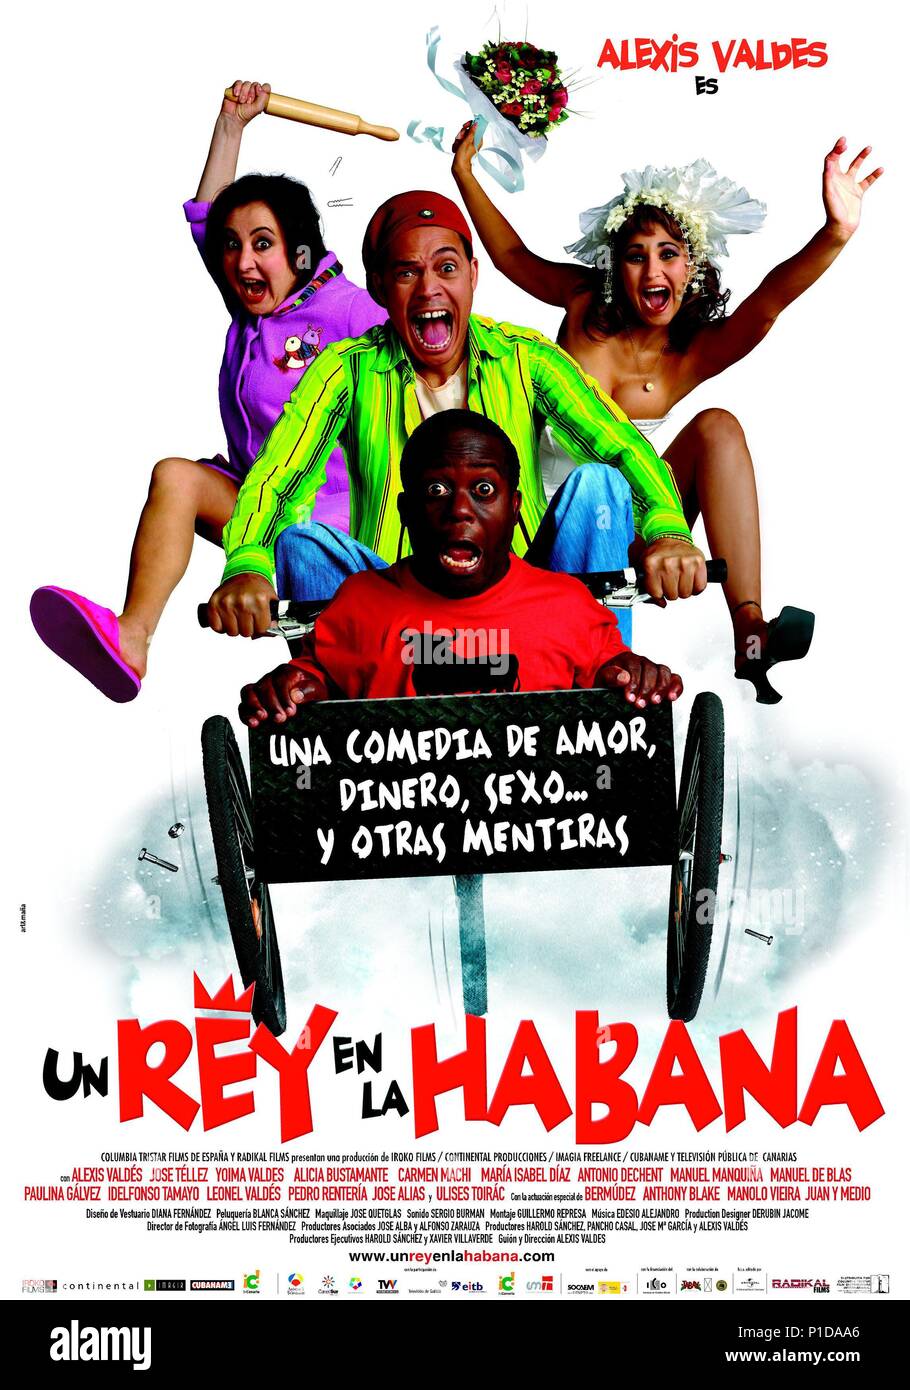 El título original de la película: UN REY EN LA HABANA. Título en inglés:  UN REY EN LA HABANA. El director de cine: ALEXIS VALDES. Año: 2005.  Crédito: IROKO Films, S.L./Continental Producciones